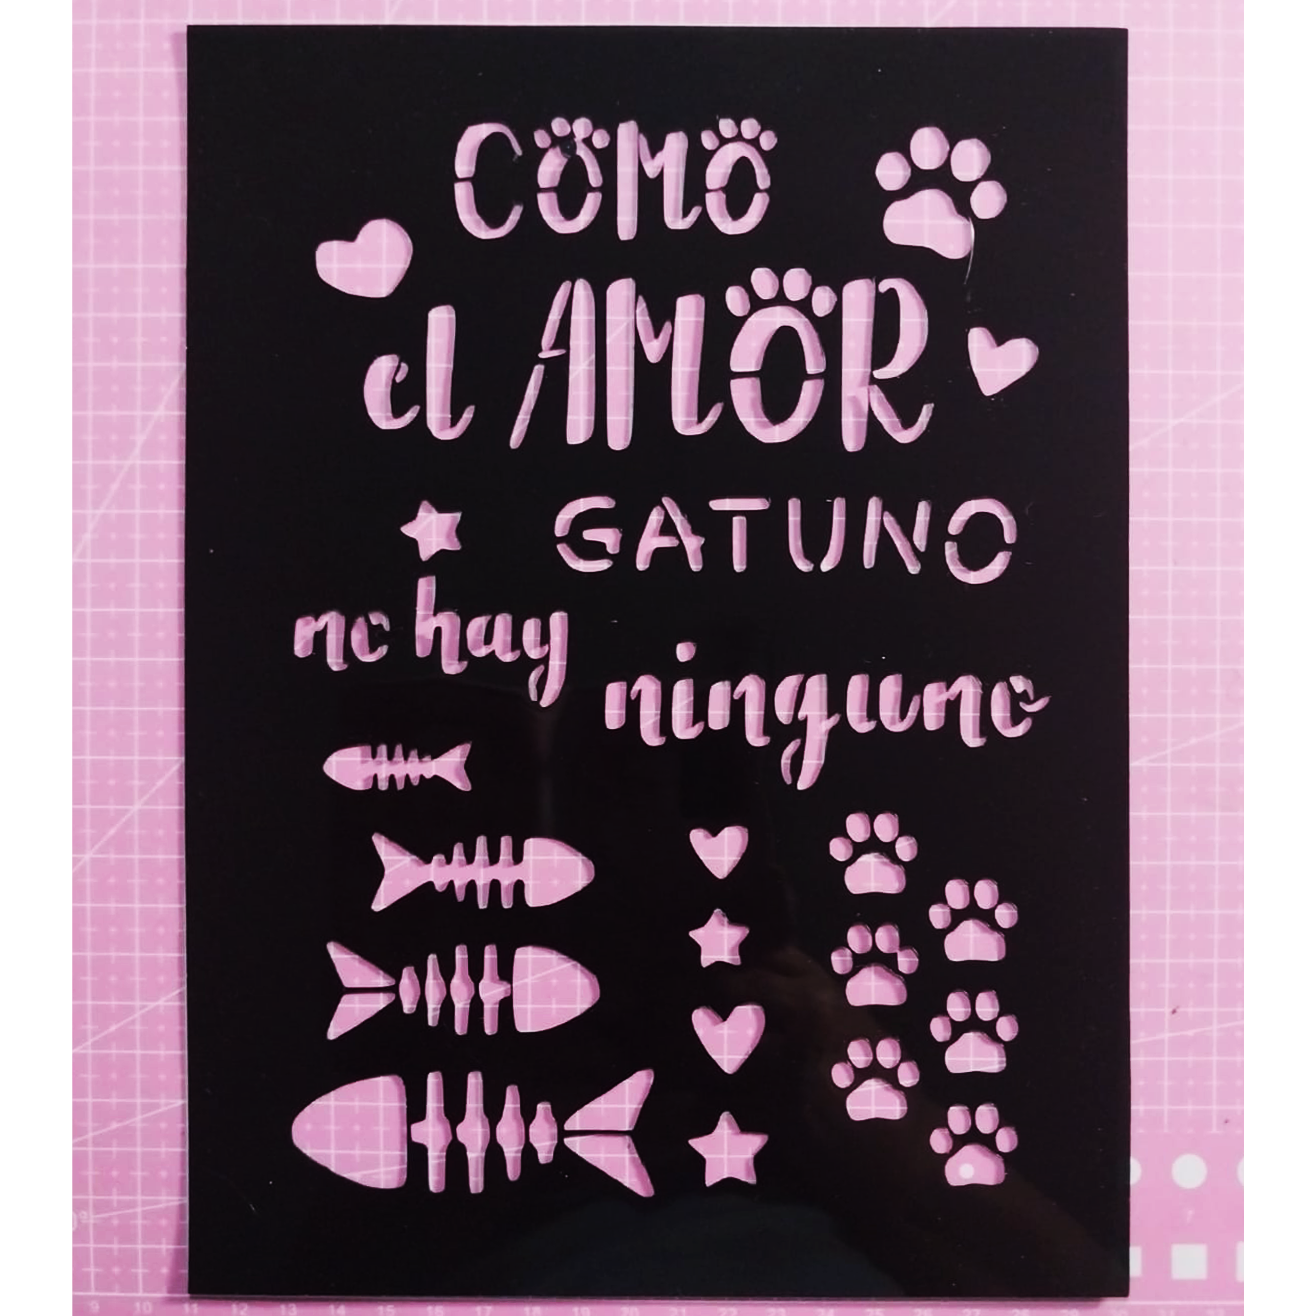 Stencil texto "Como el amor gatuno, no hay ninguno" 18,5x25,5 cms (S164)